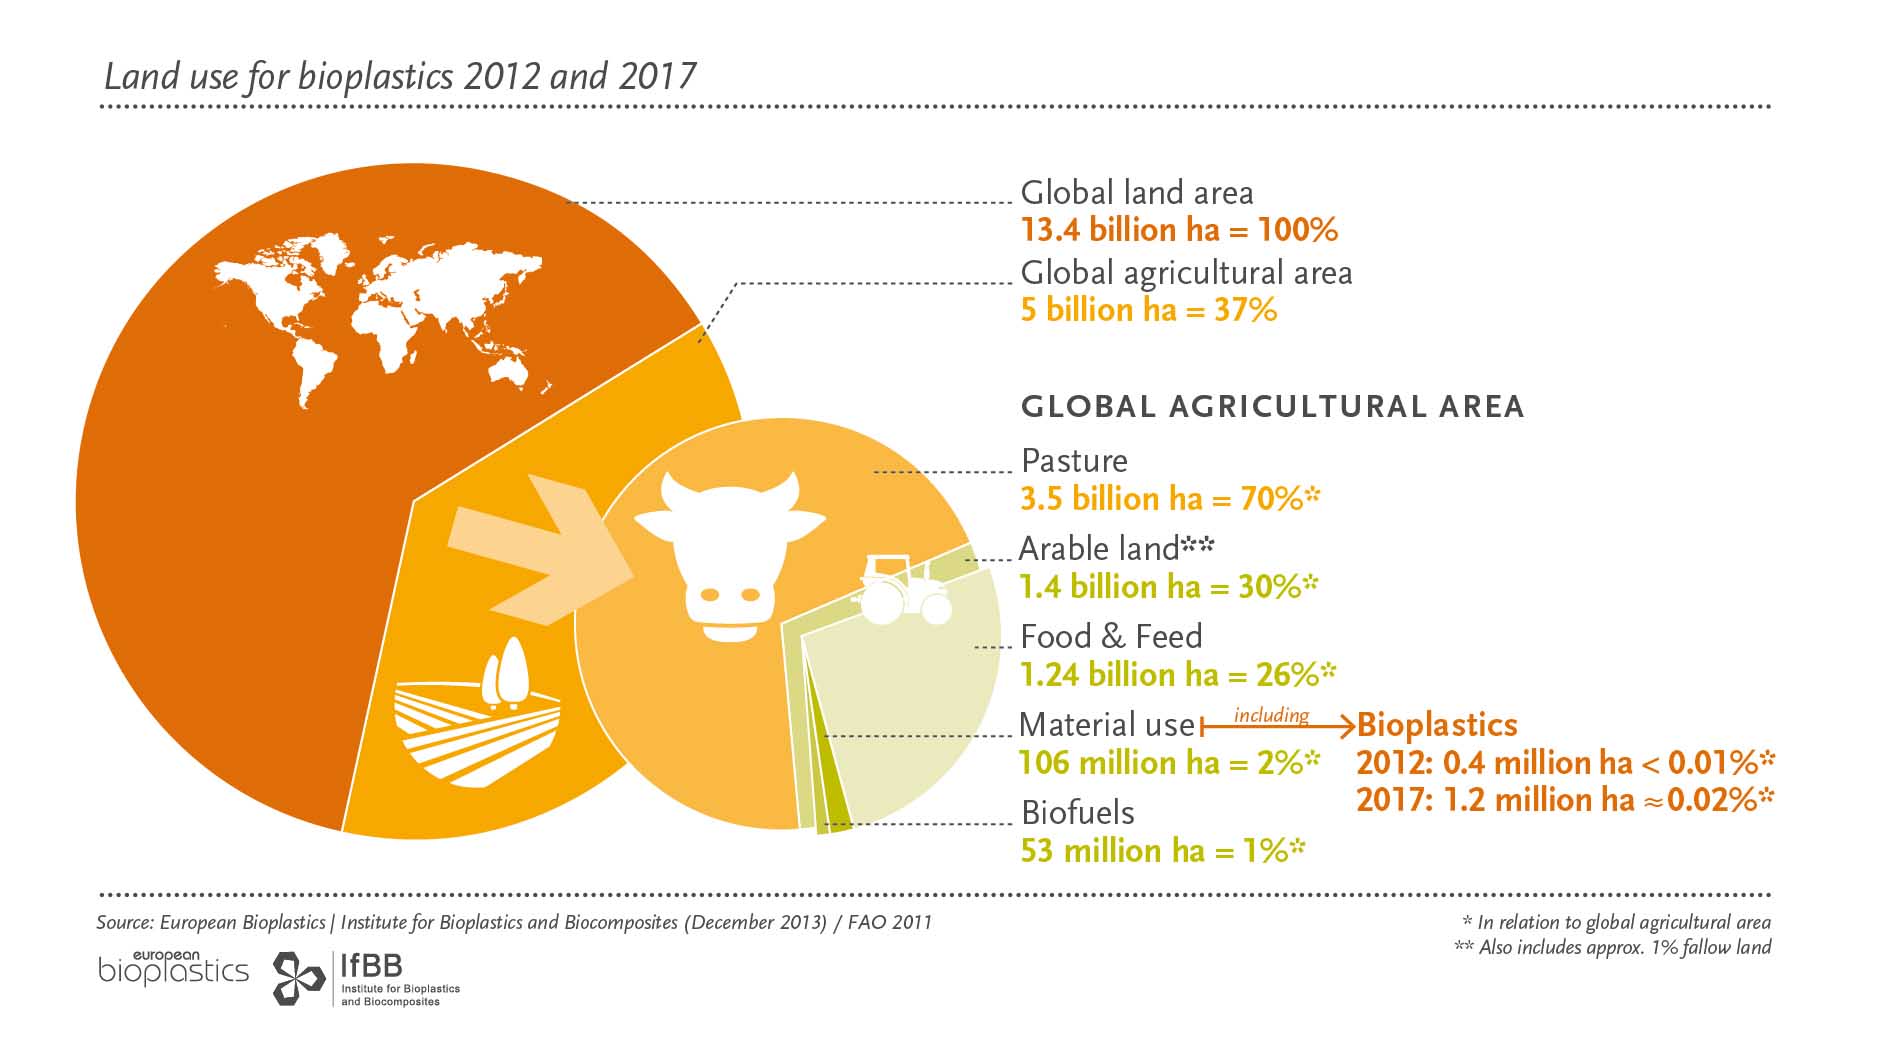 37% de la tierra cultivable para agricultura. La destinada a bioplásticos, es 0,02%.